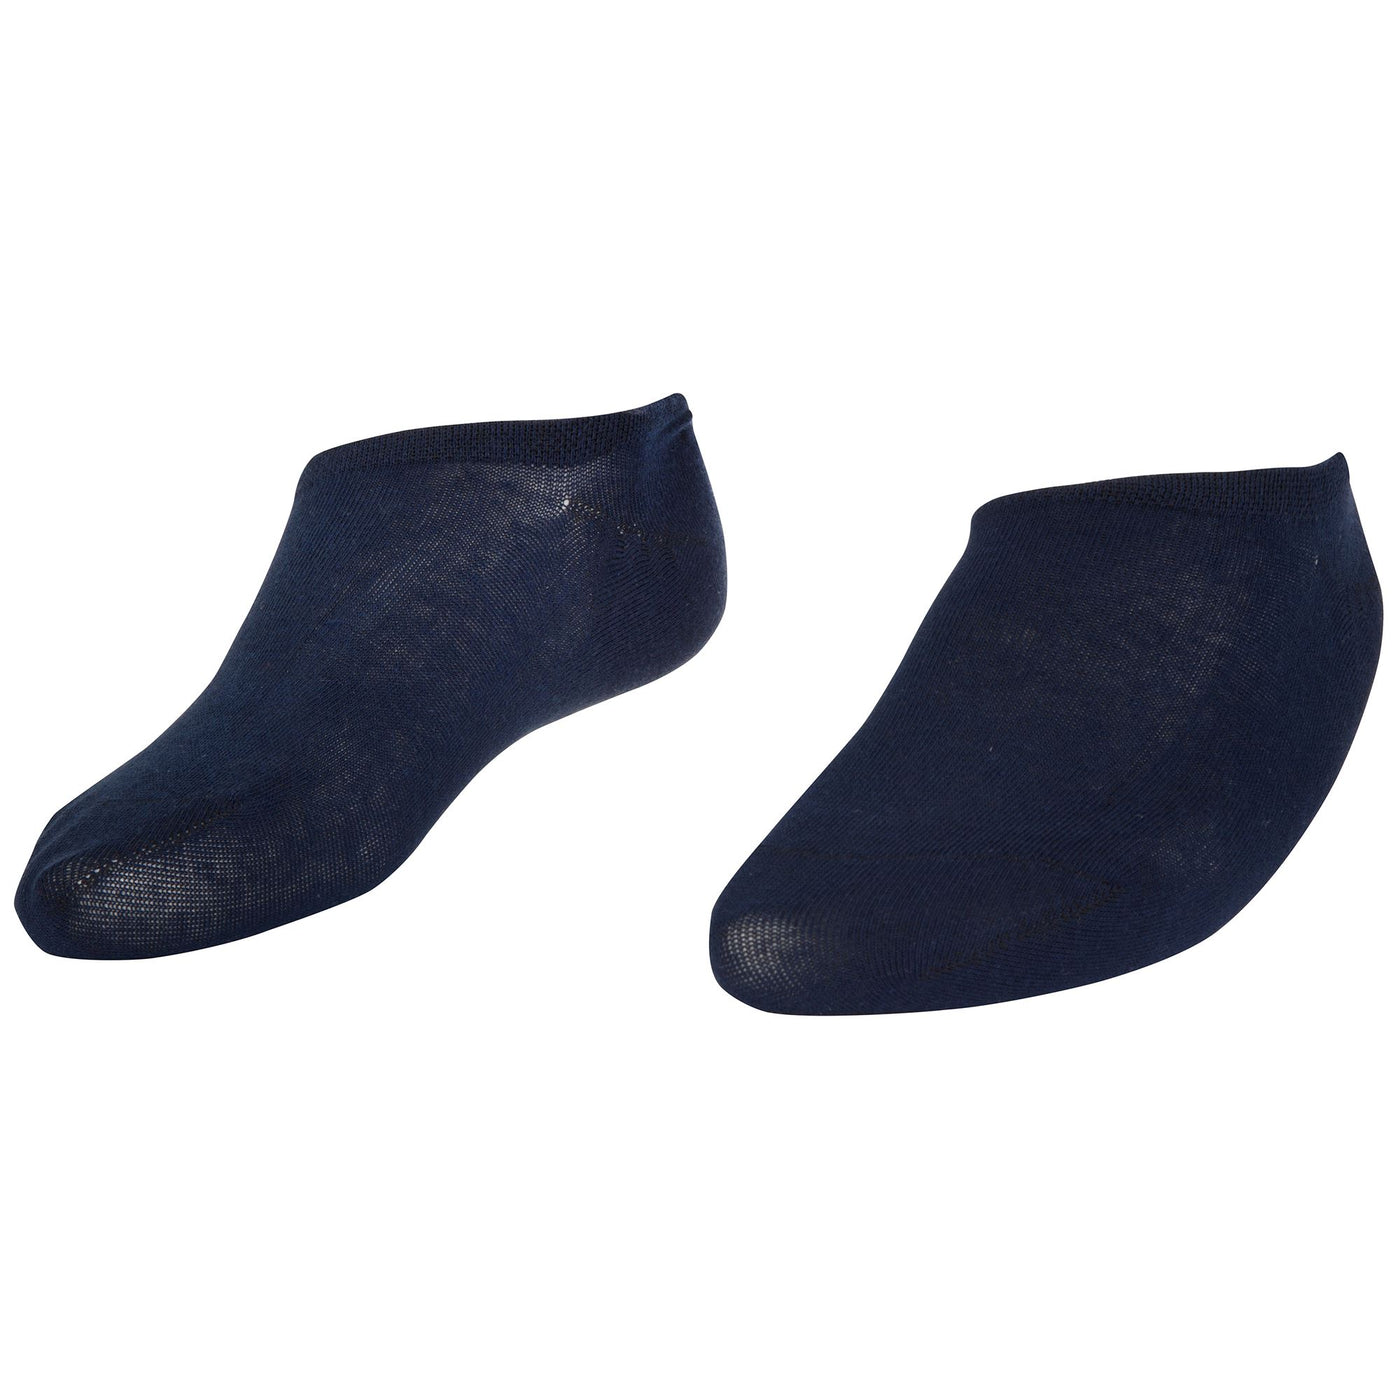 Socks Unisex COTTON NO SHOW Footsies BLUE NAVY Photo (jpg Rgb)			